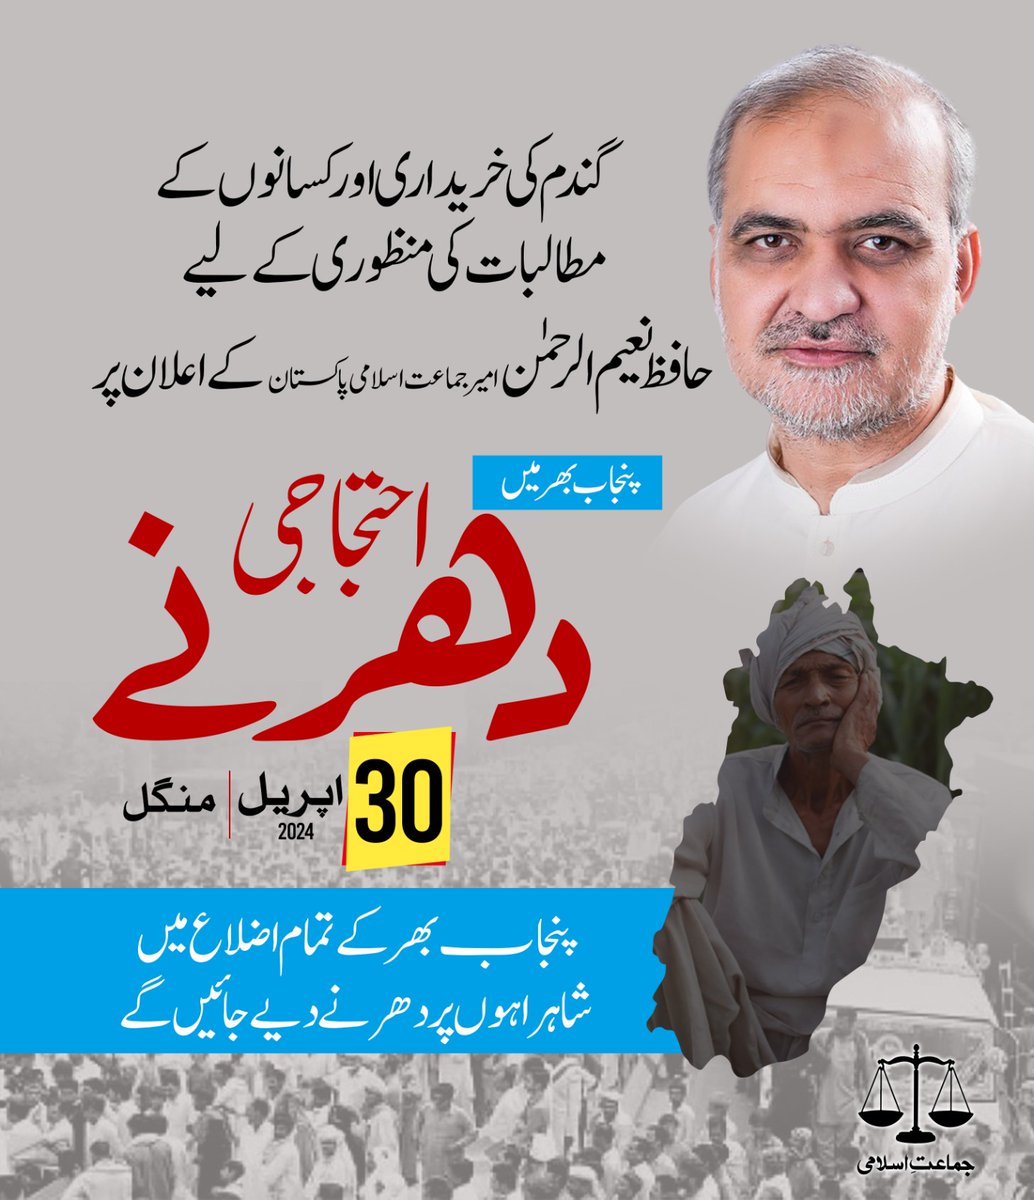 گندم کی خریداری اور کسانوں کے مطالبات کی منظوری کےلیے امیر جماعت اسلامی پاکستان حافظ نعیم الرحمن کے اعلان پر پنجاب بھر میں 30 اپریل کو احتجاجی دھرنے دیے جائیں گے #حق_دو_کسان_کو